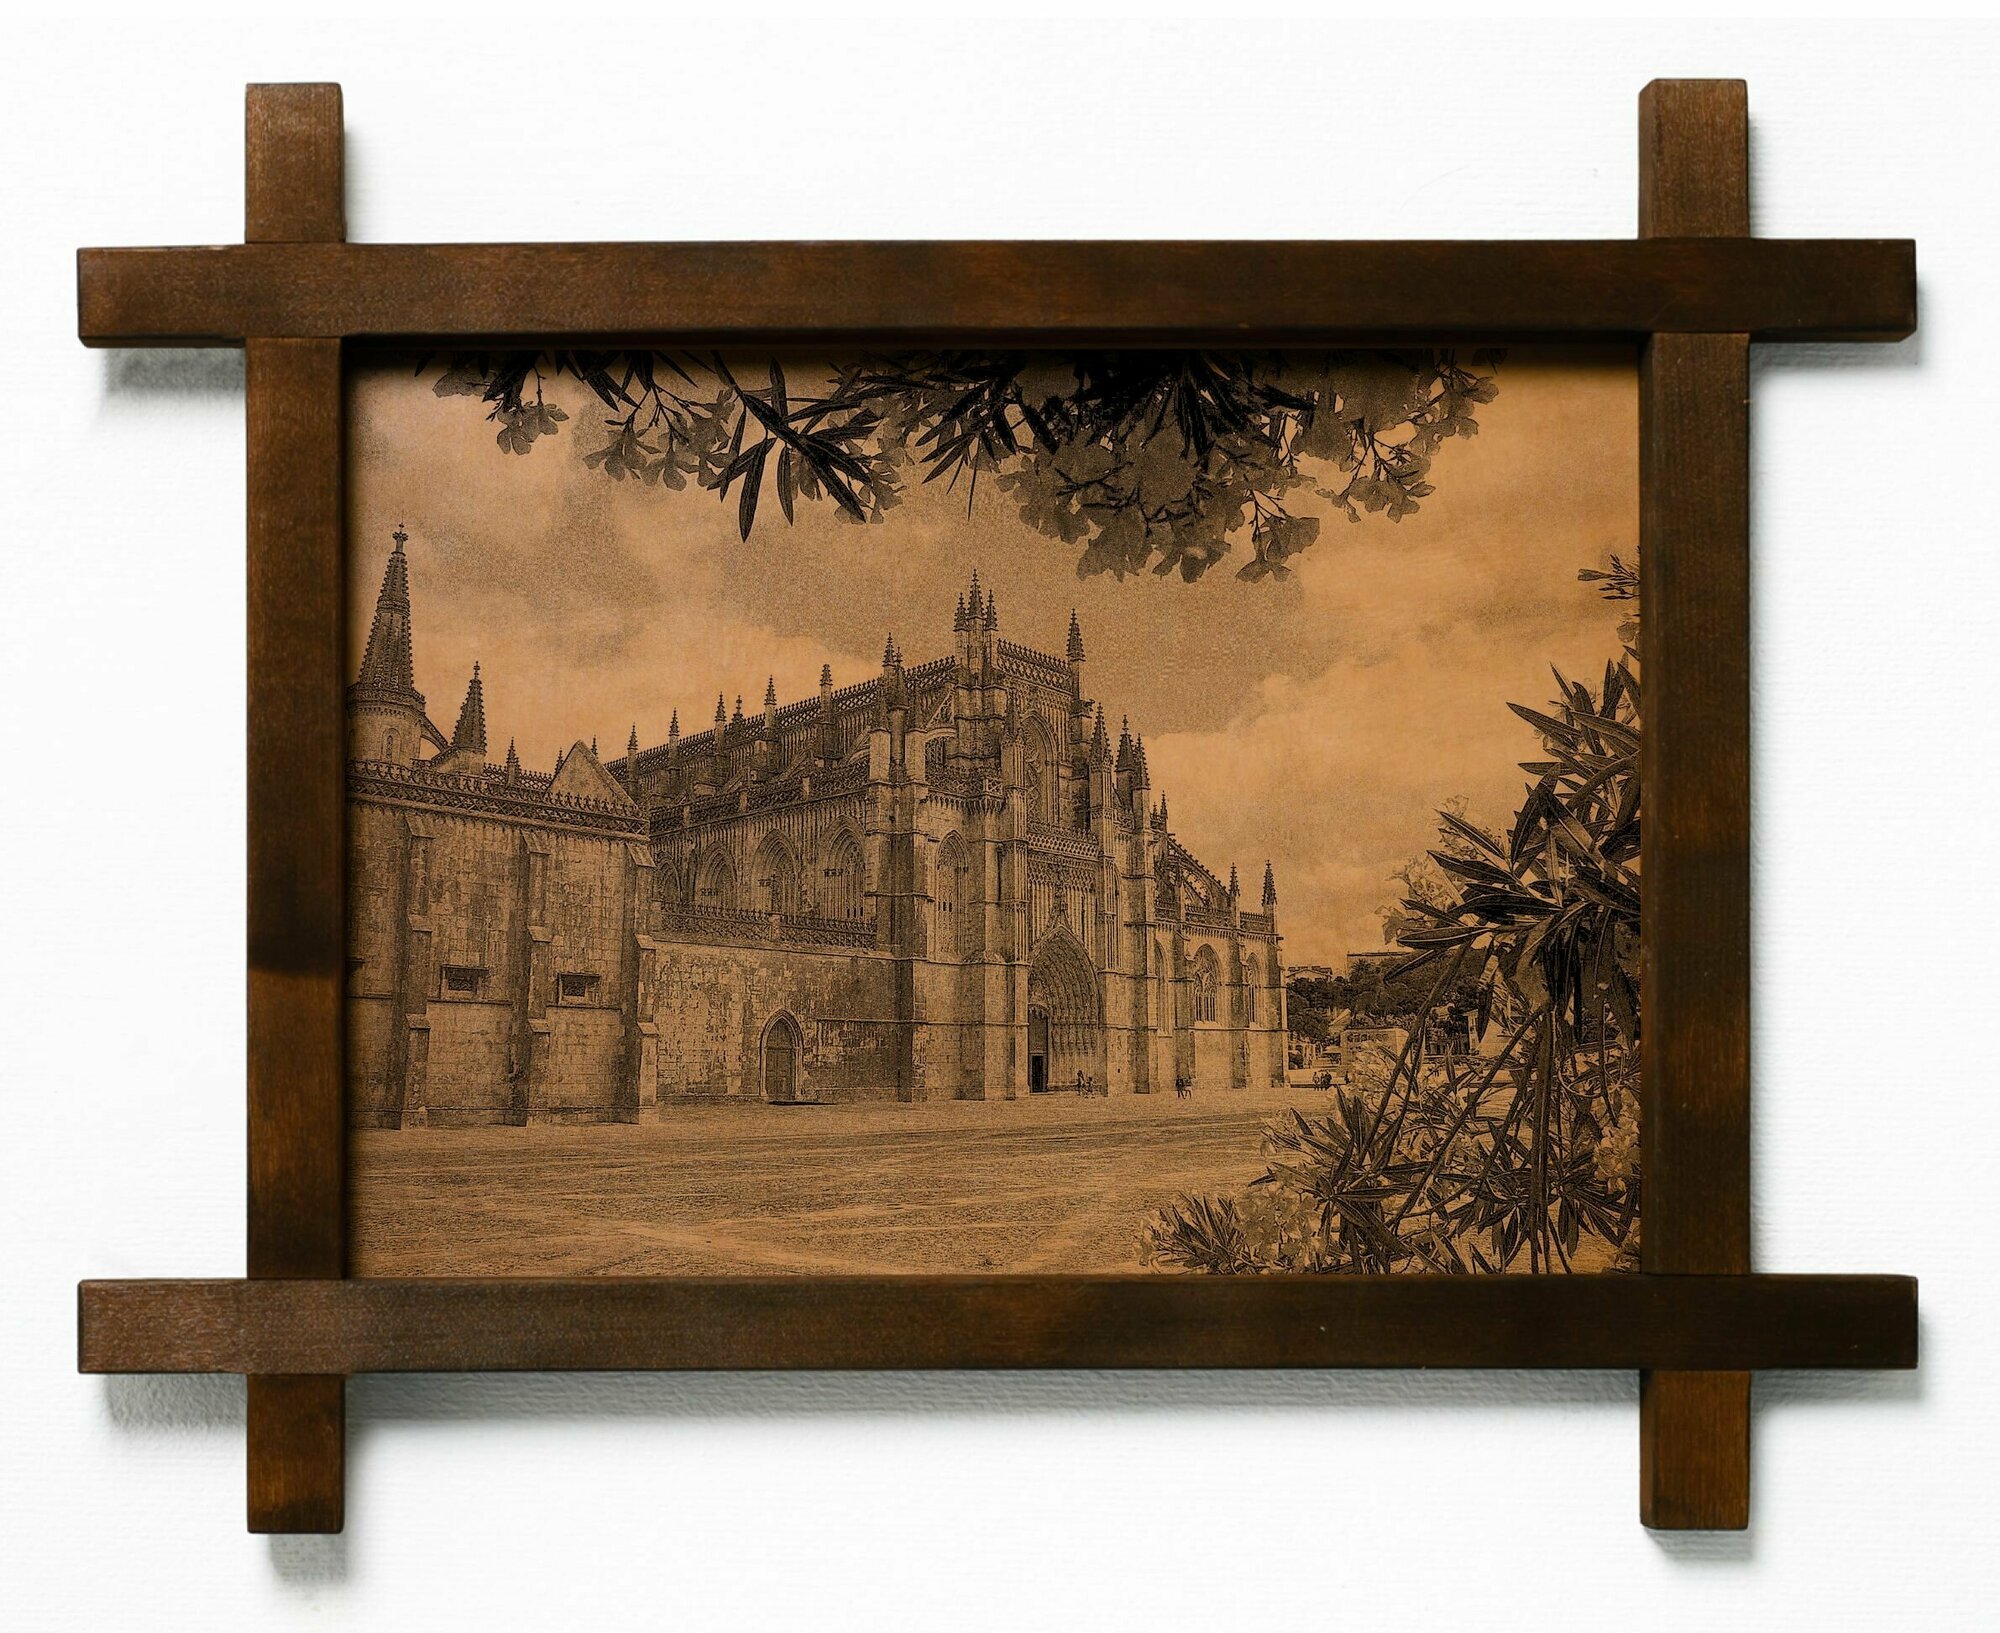 Картина Монастырь Баталья, Португалия, гравировка на натуральной коже, в деревянной раме, подарок, BoomGift